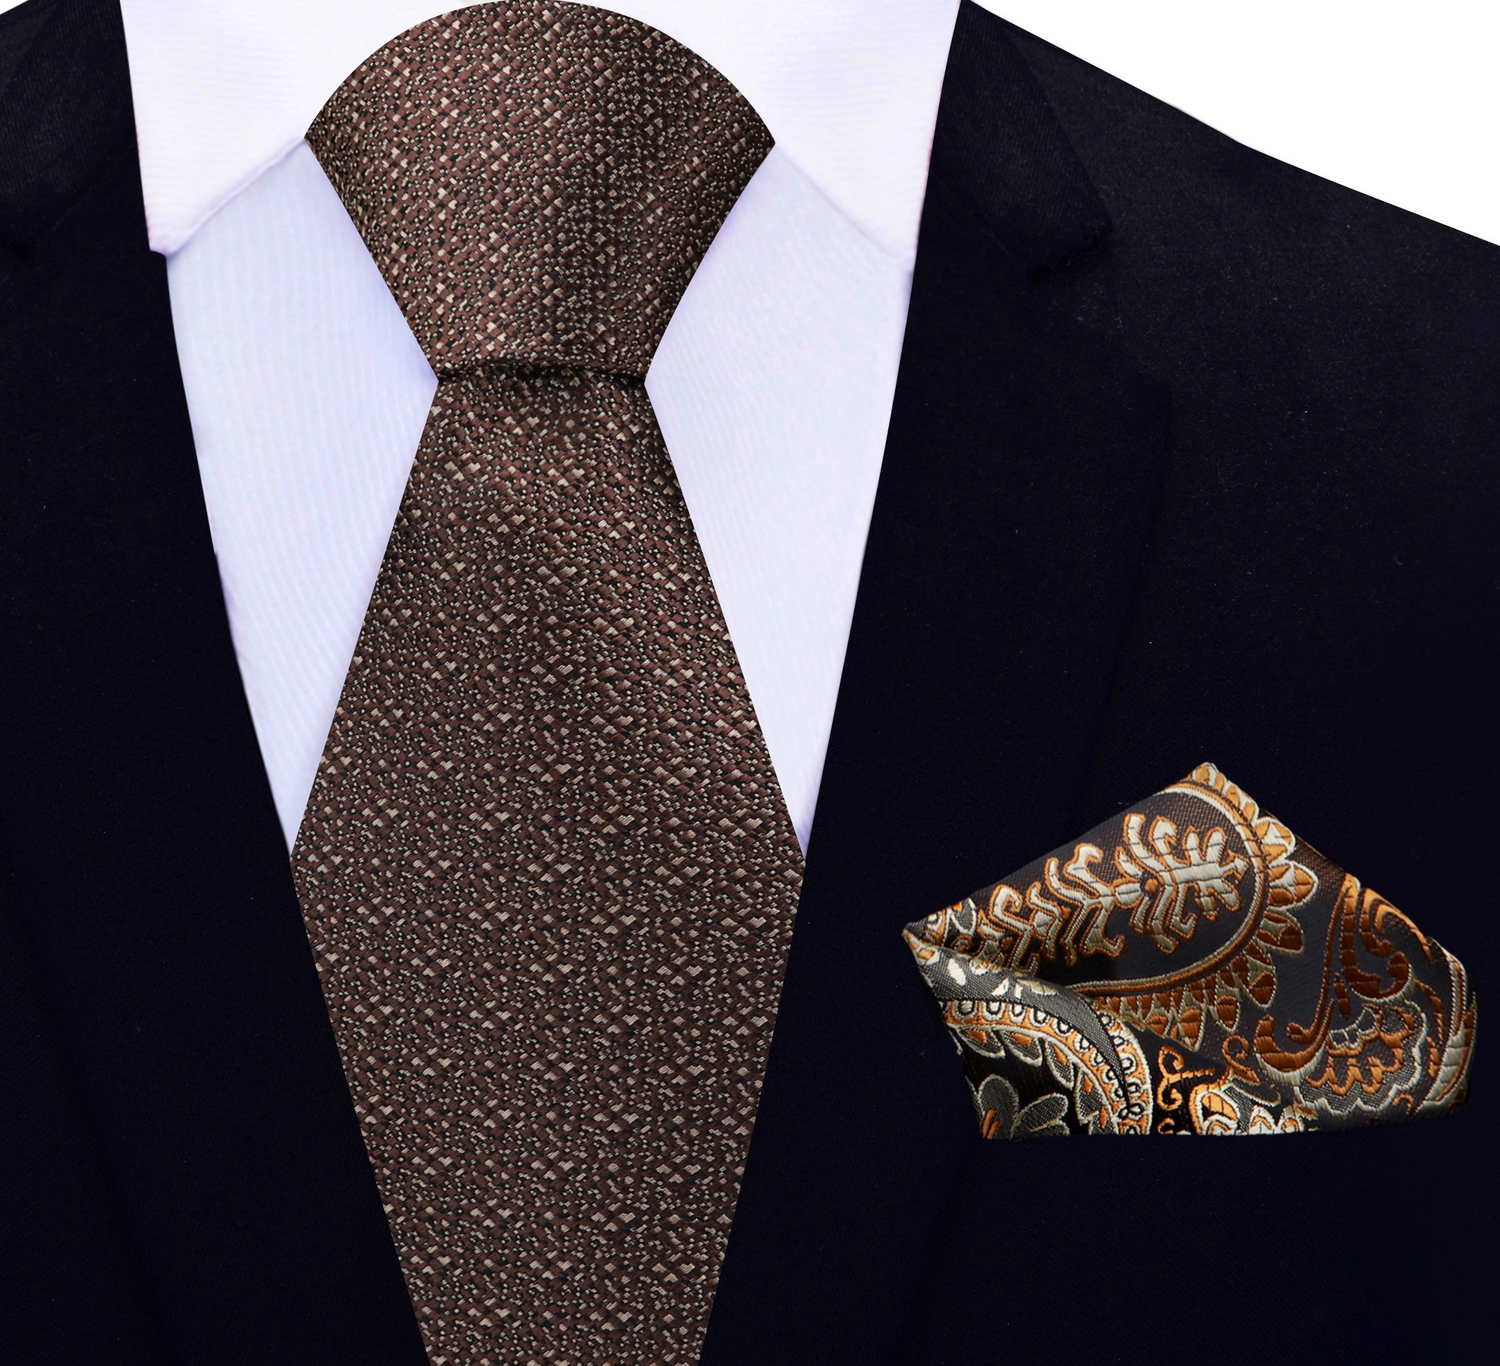 Rich Oak Brown Necktie